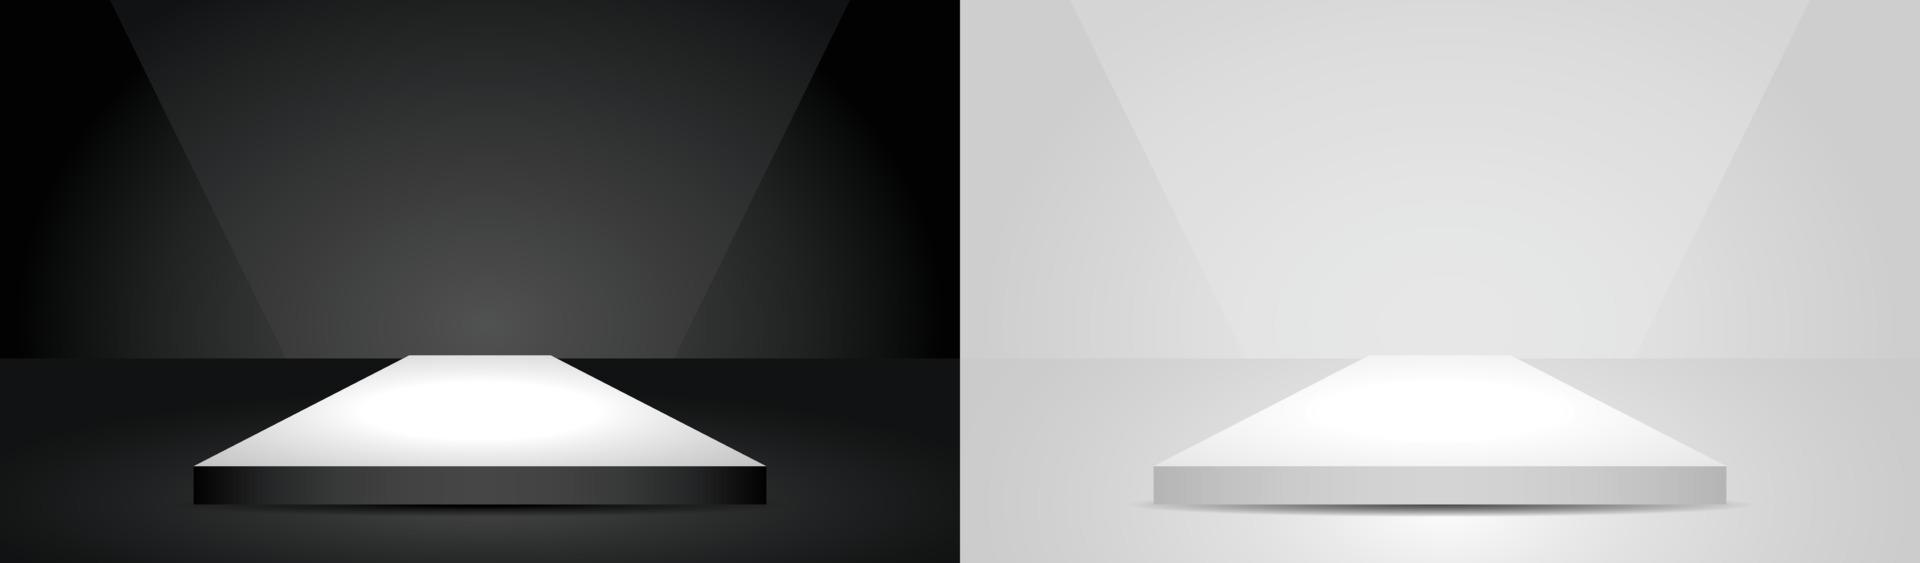 vector de ilustración 3d de pantalla de podio cuadrado de luz mínima en blanco y negro para poner su objeto